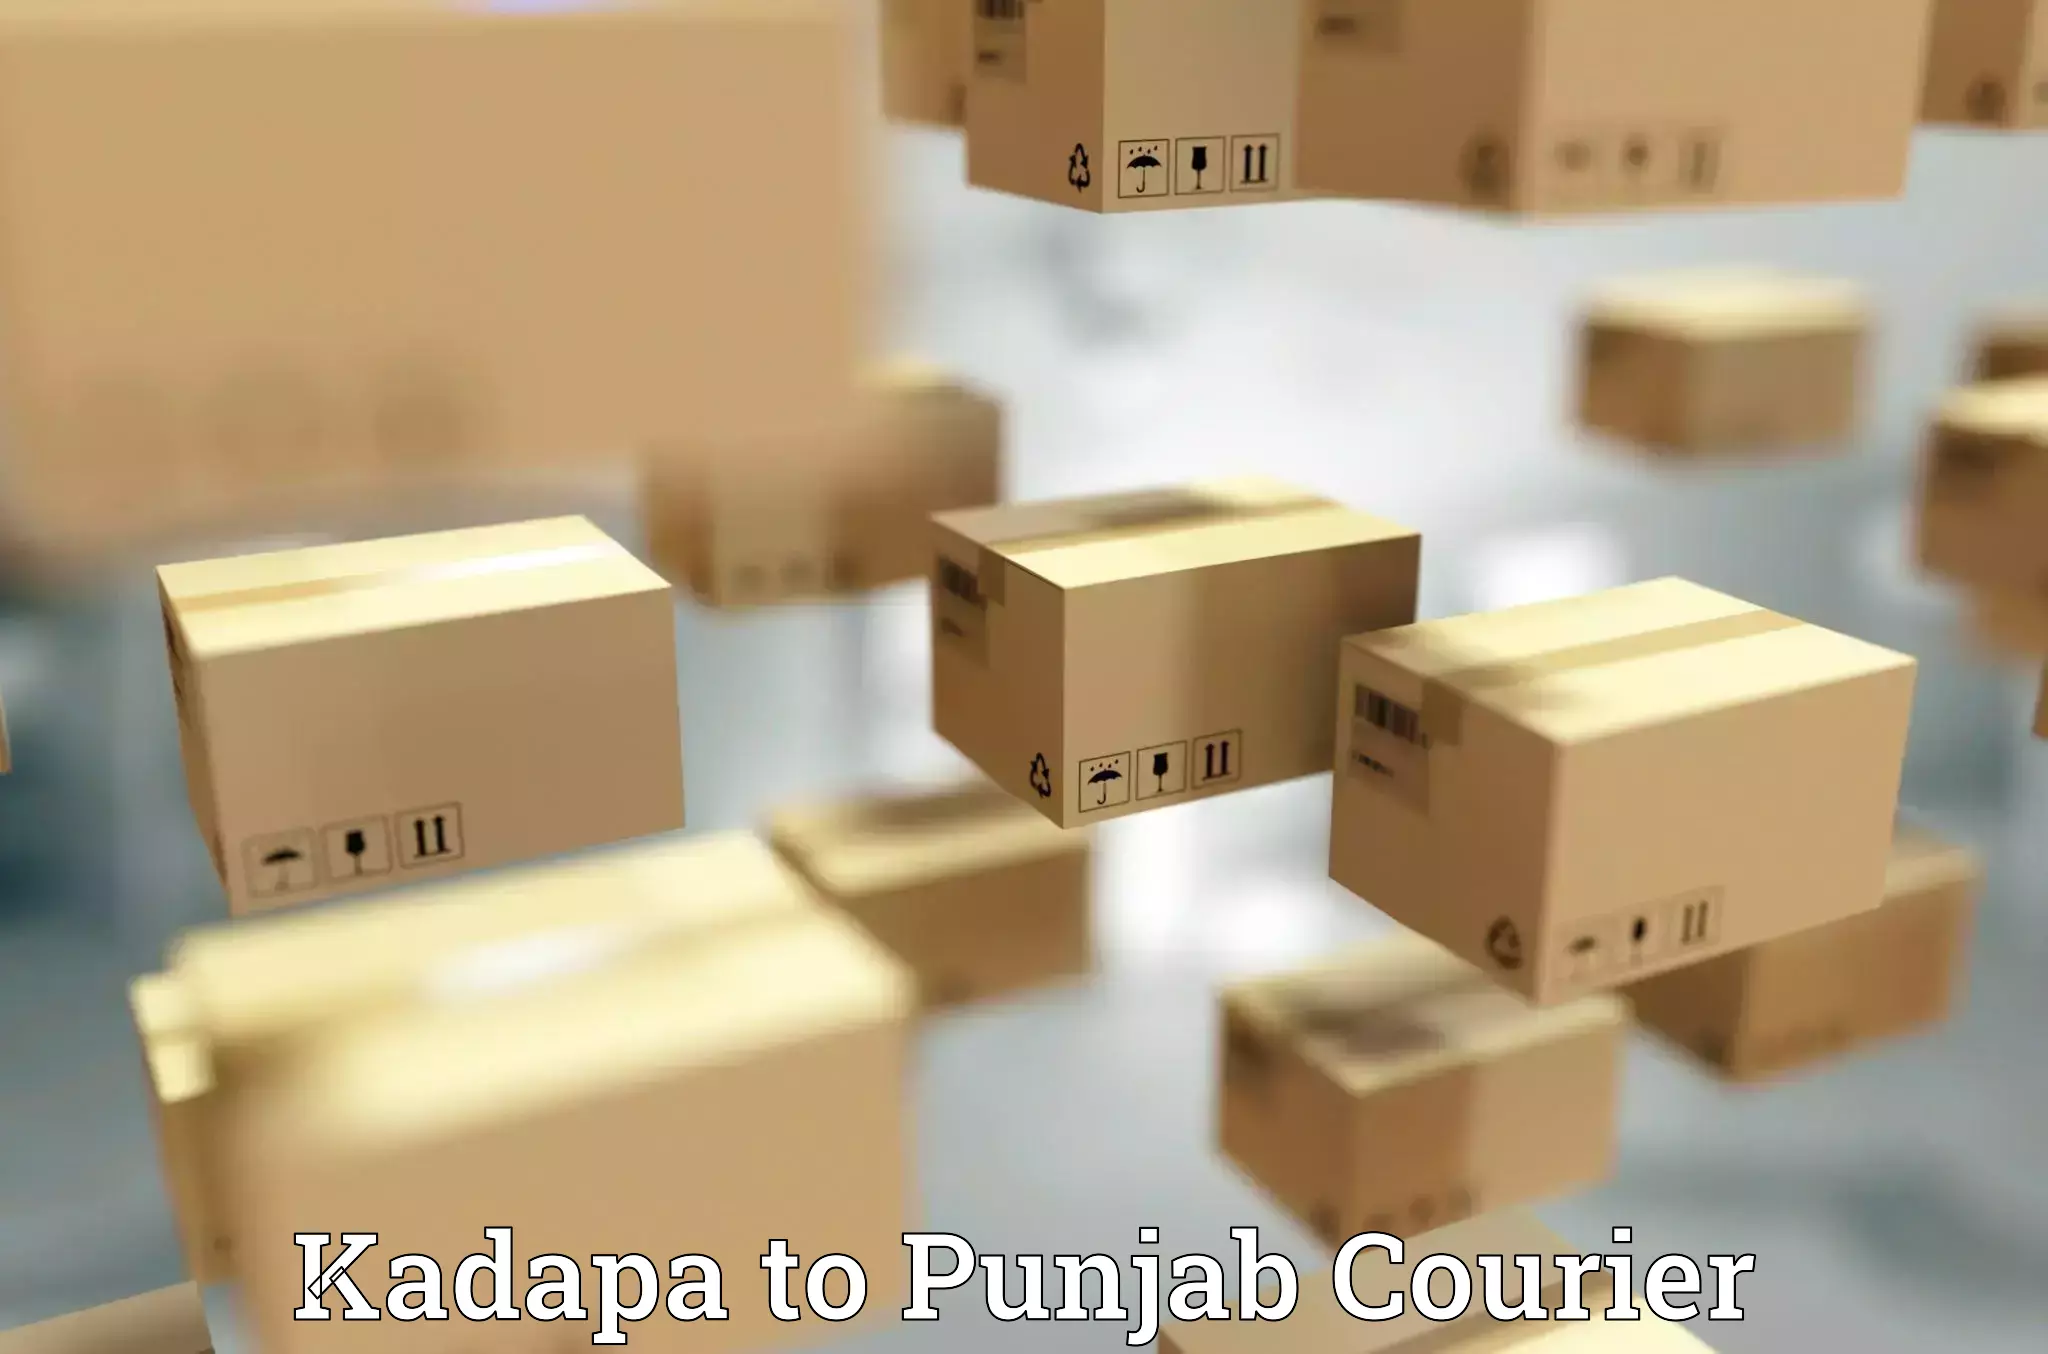 Multi-city courier Kadapa to Punjab